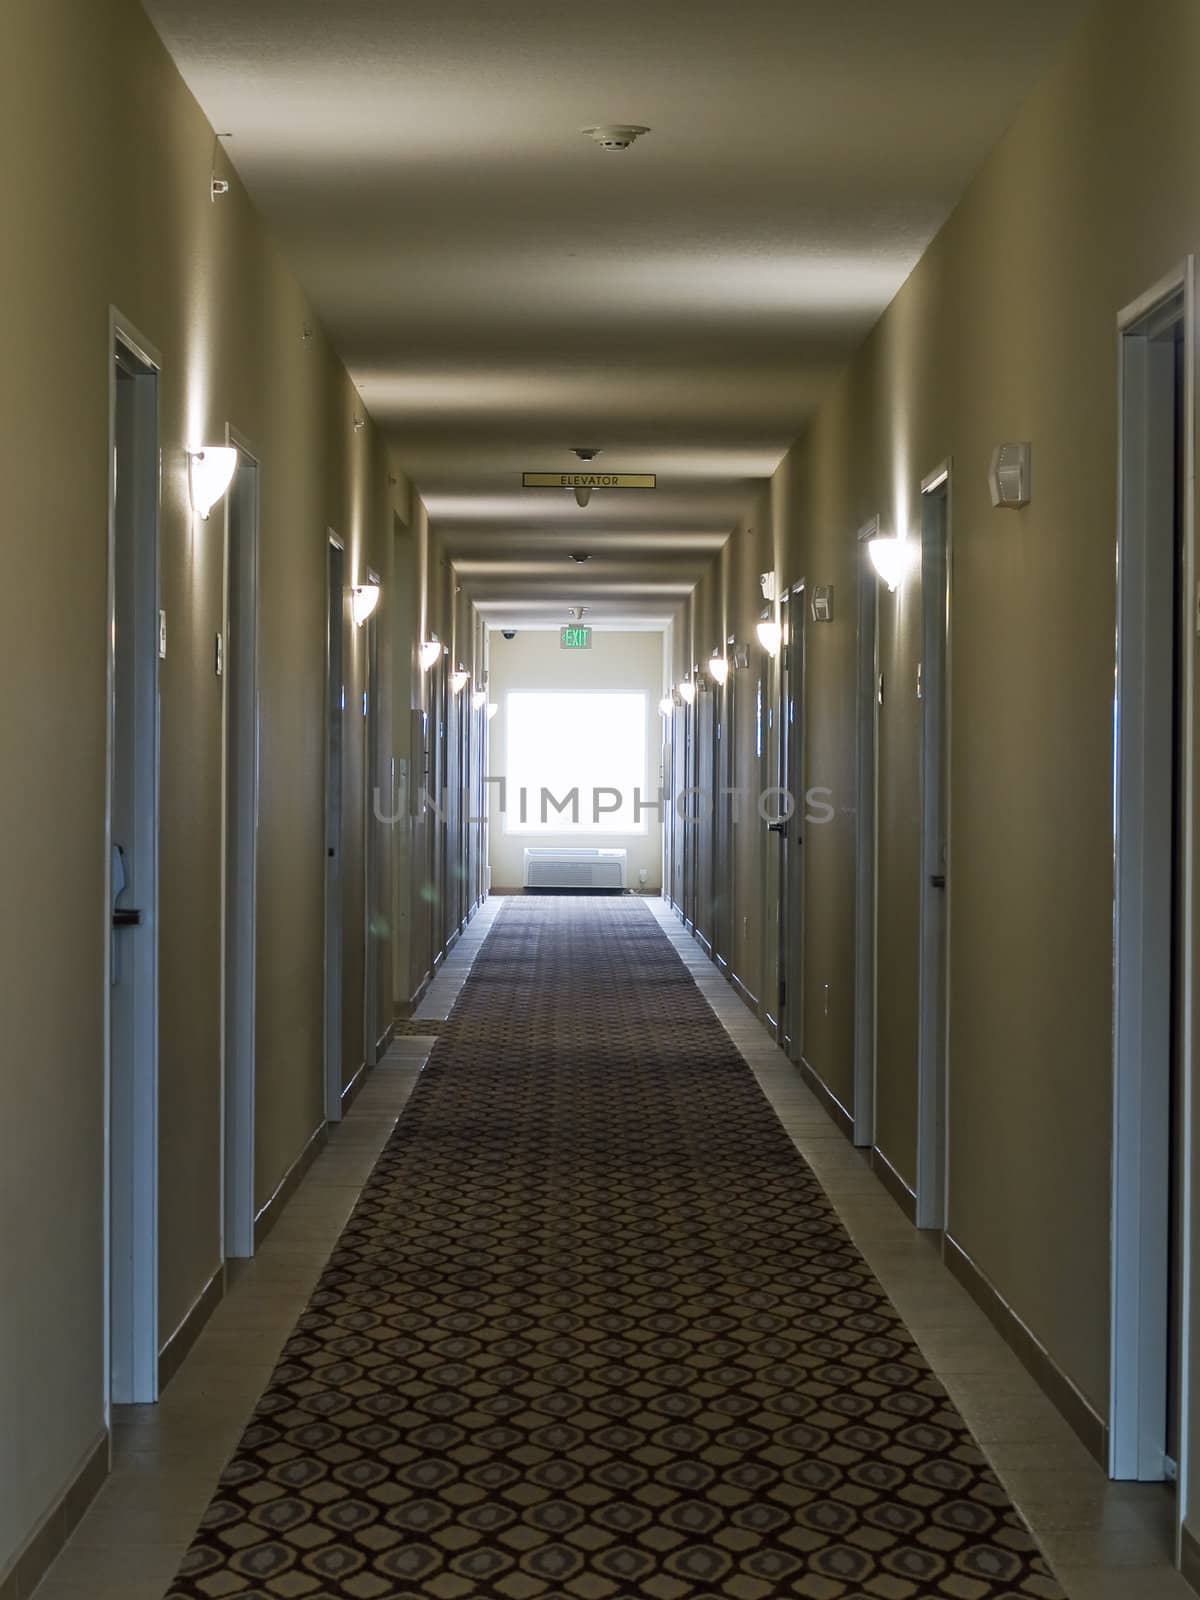 Empty hotel corridor in monochrome sepia color tone by Frankljunior